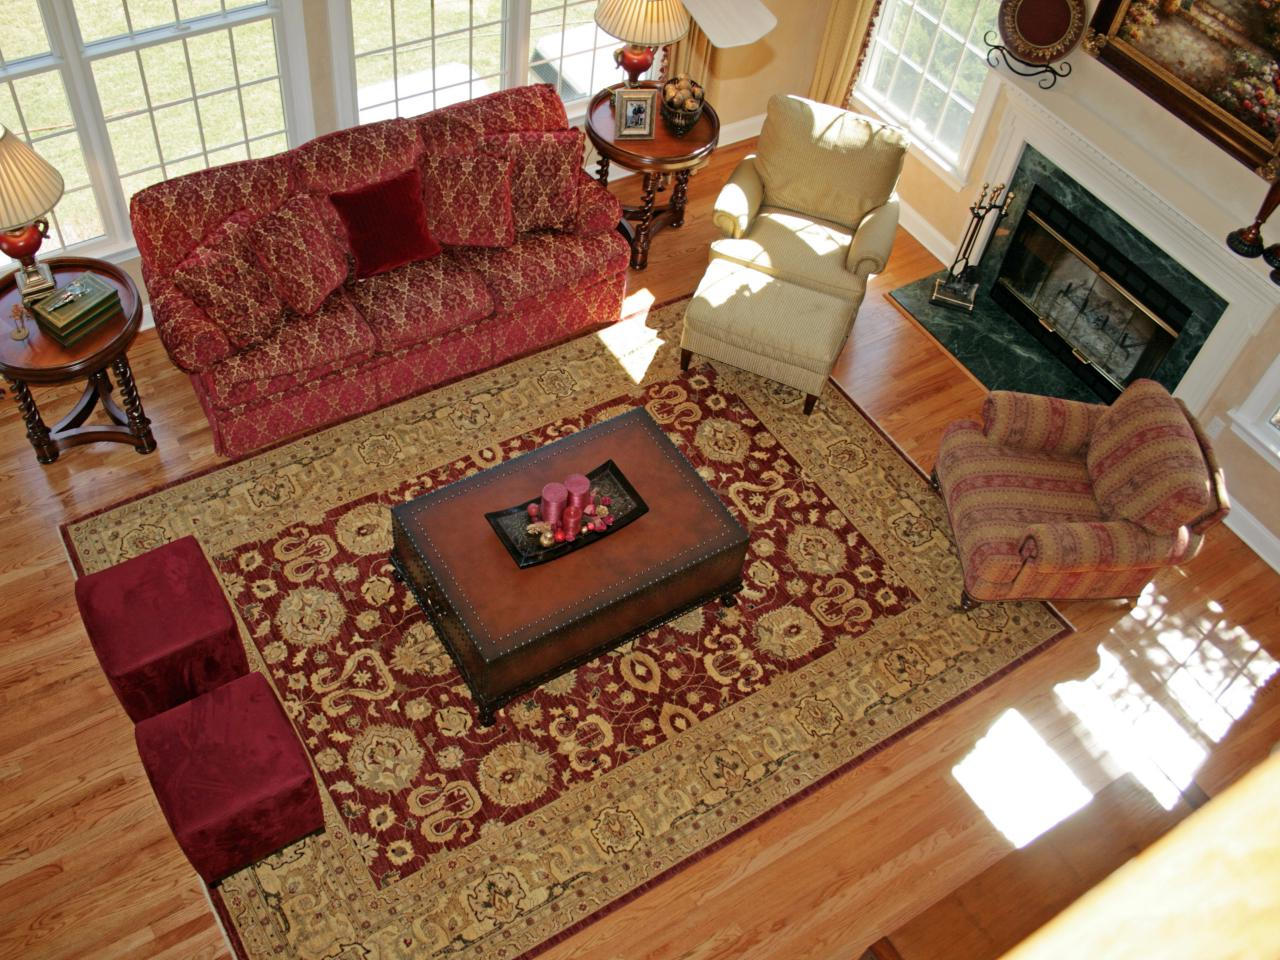 Красный ковёр в интерьере комнаты